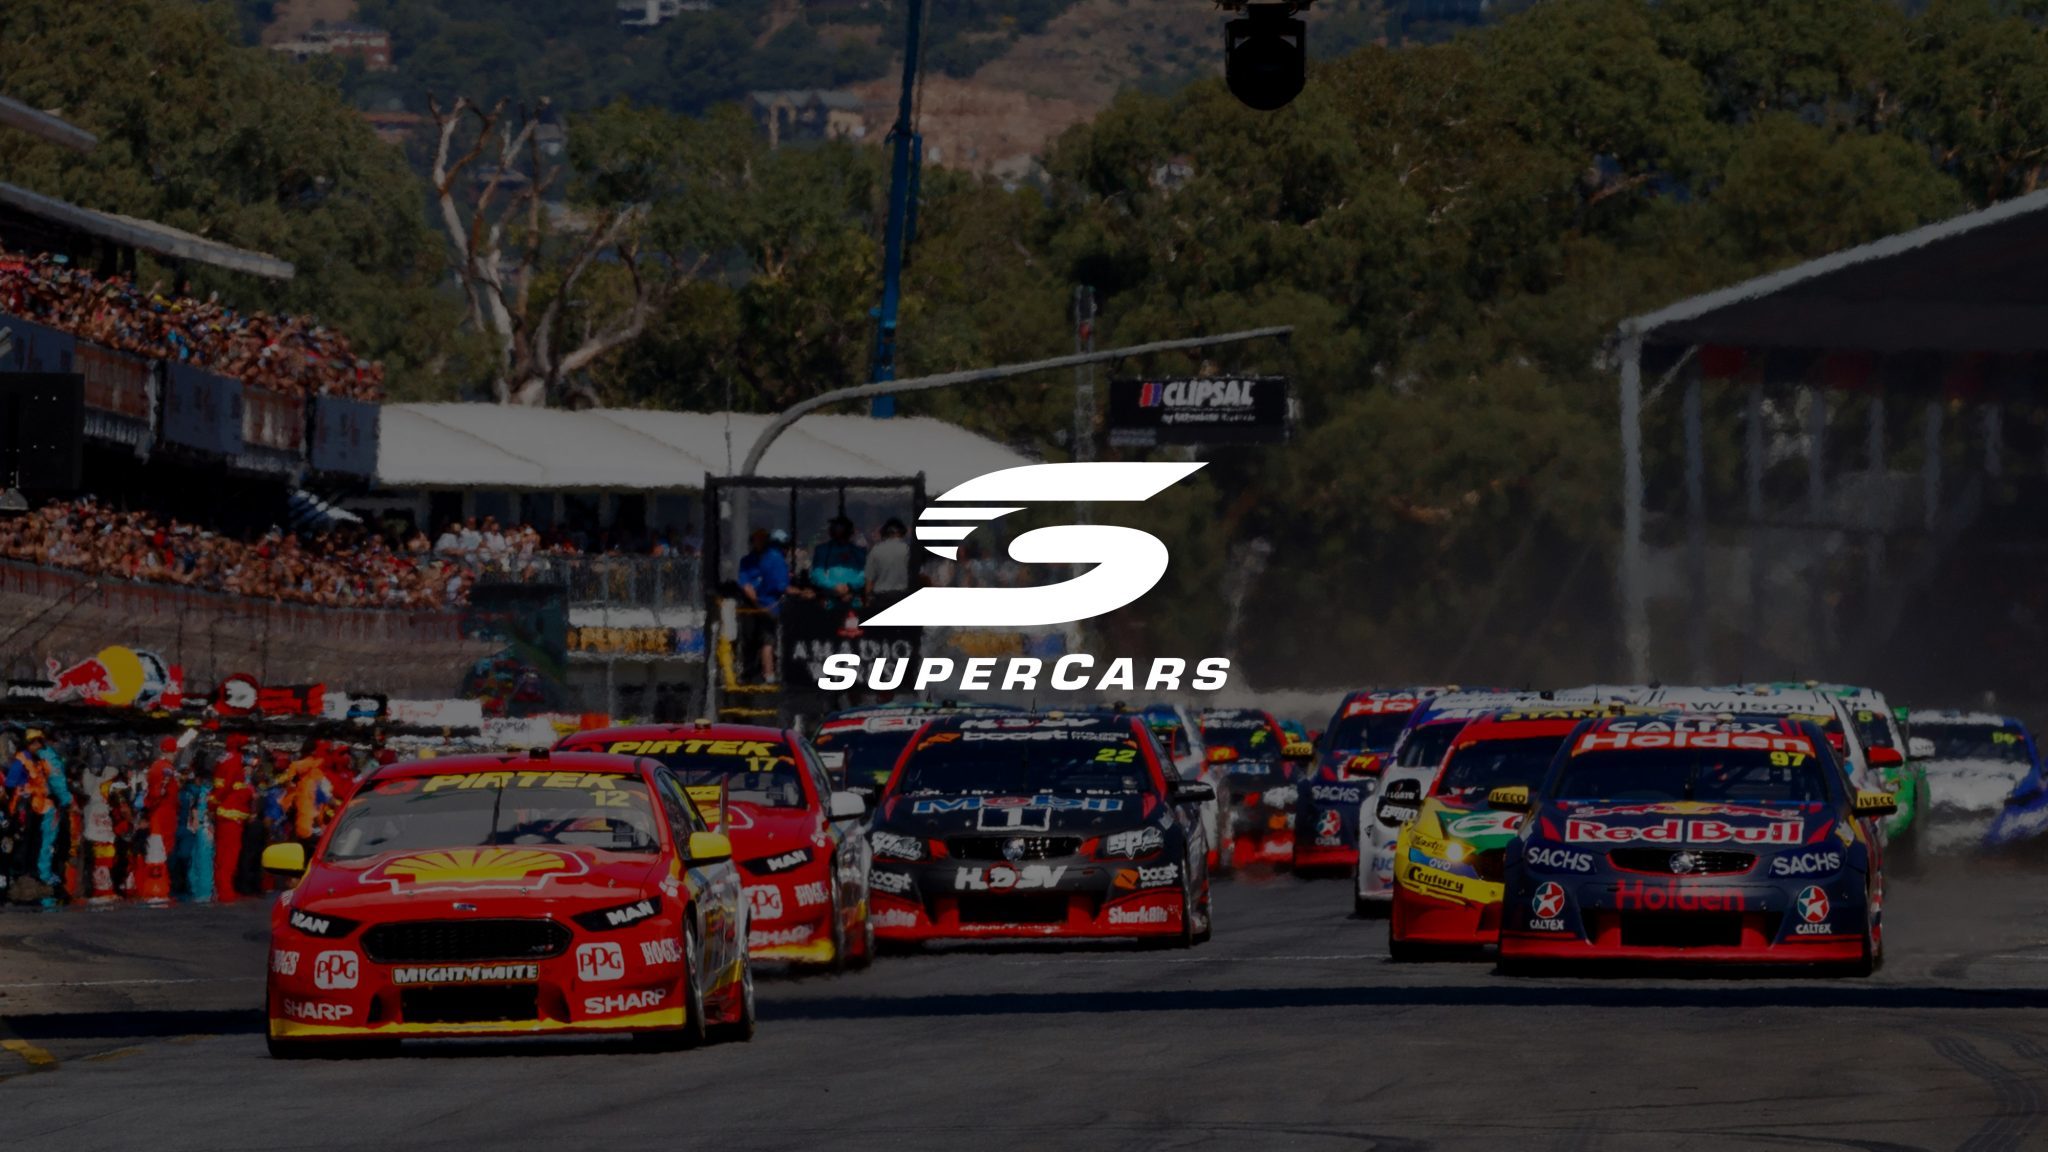 Supercars Australia brand campaigns